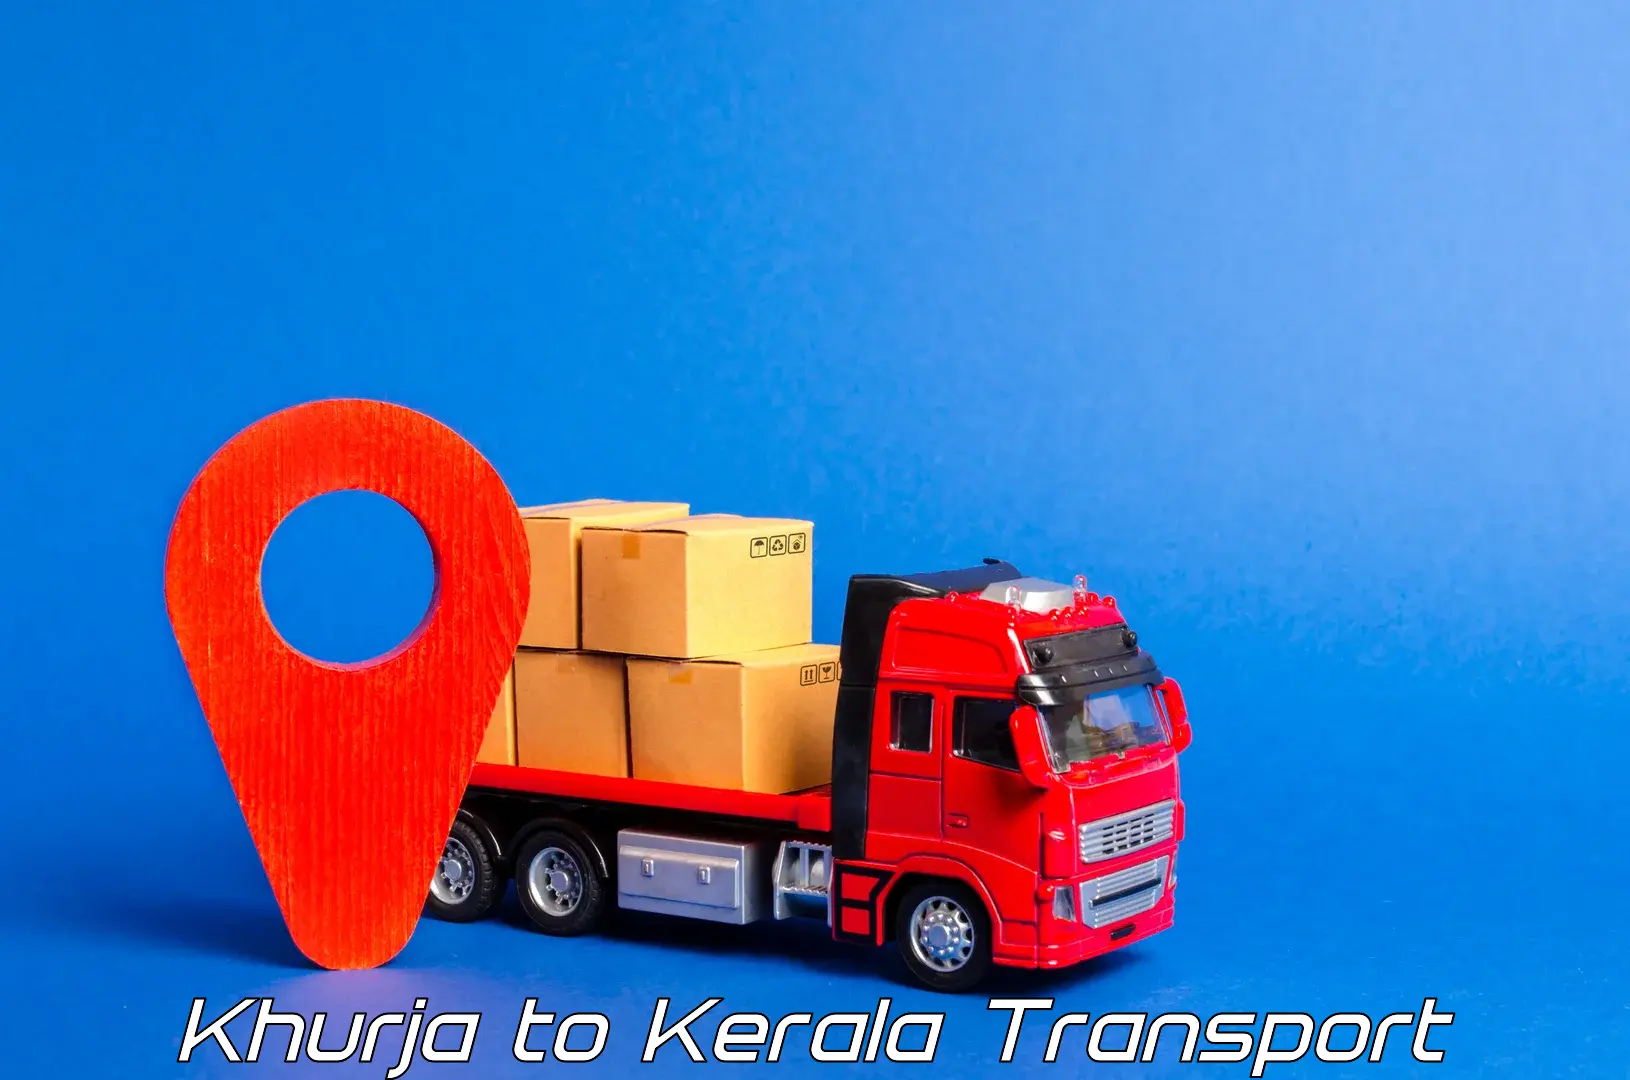 Vehicle transport services Khurja to Kerala